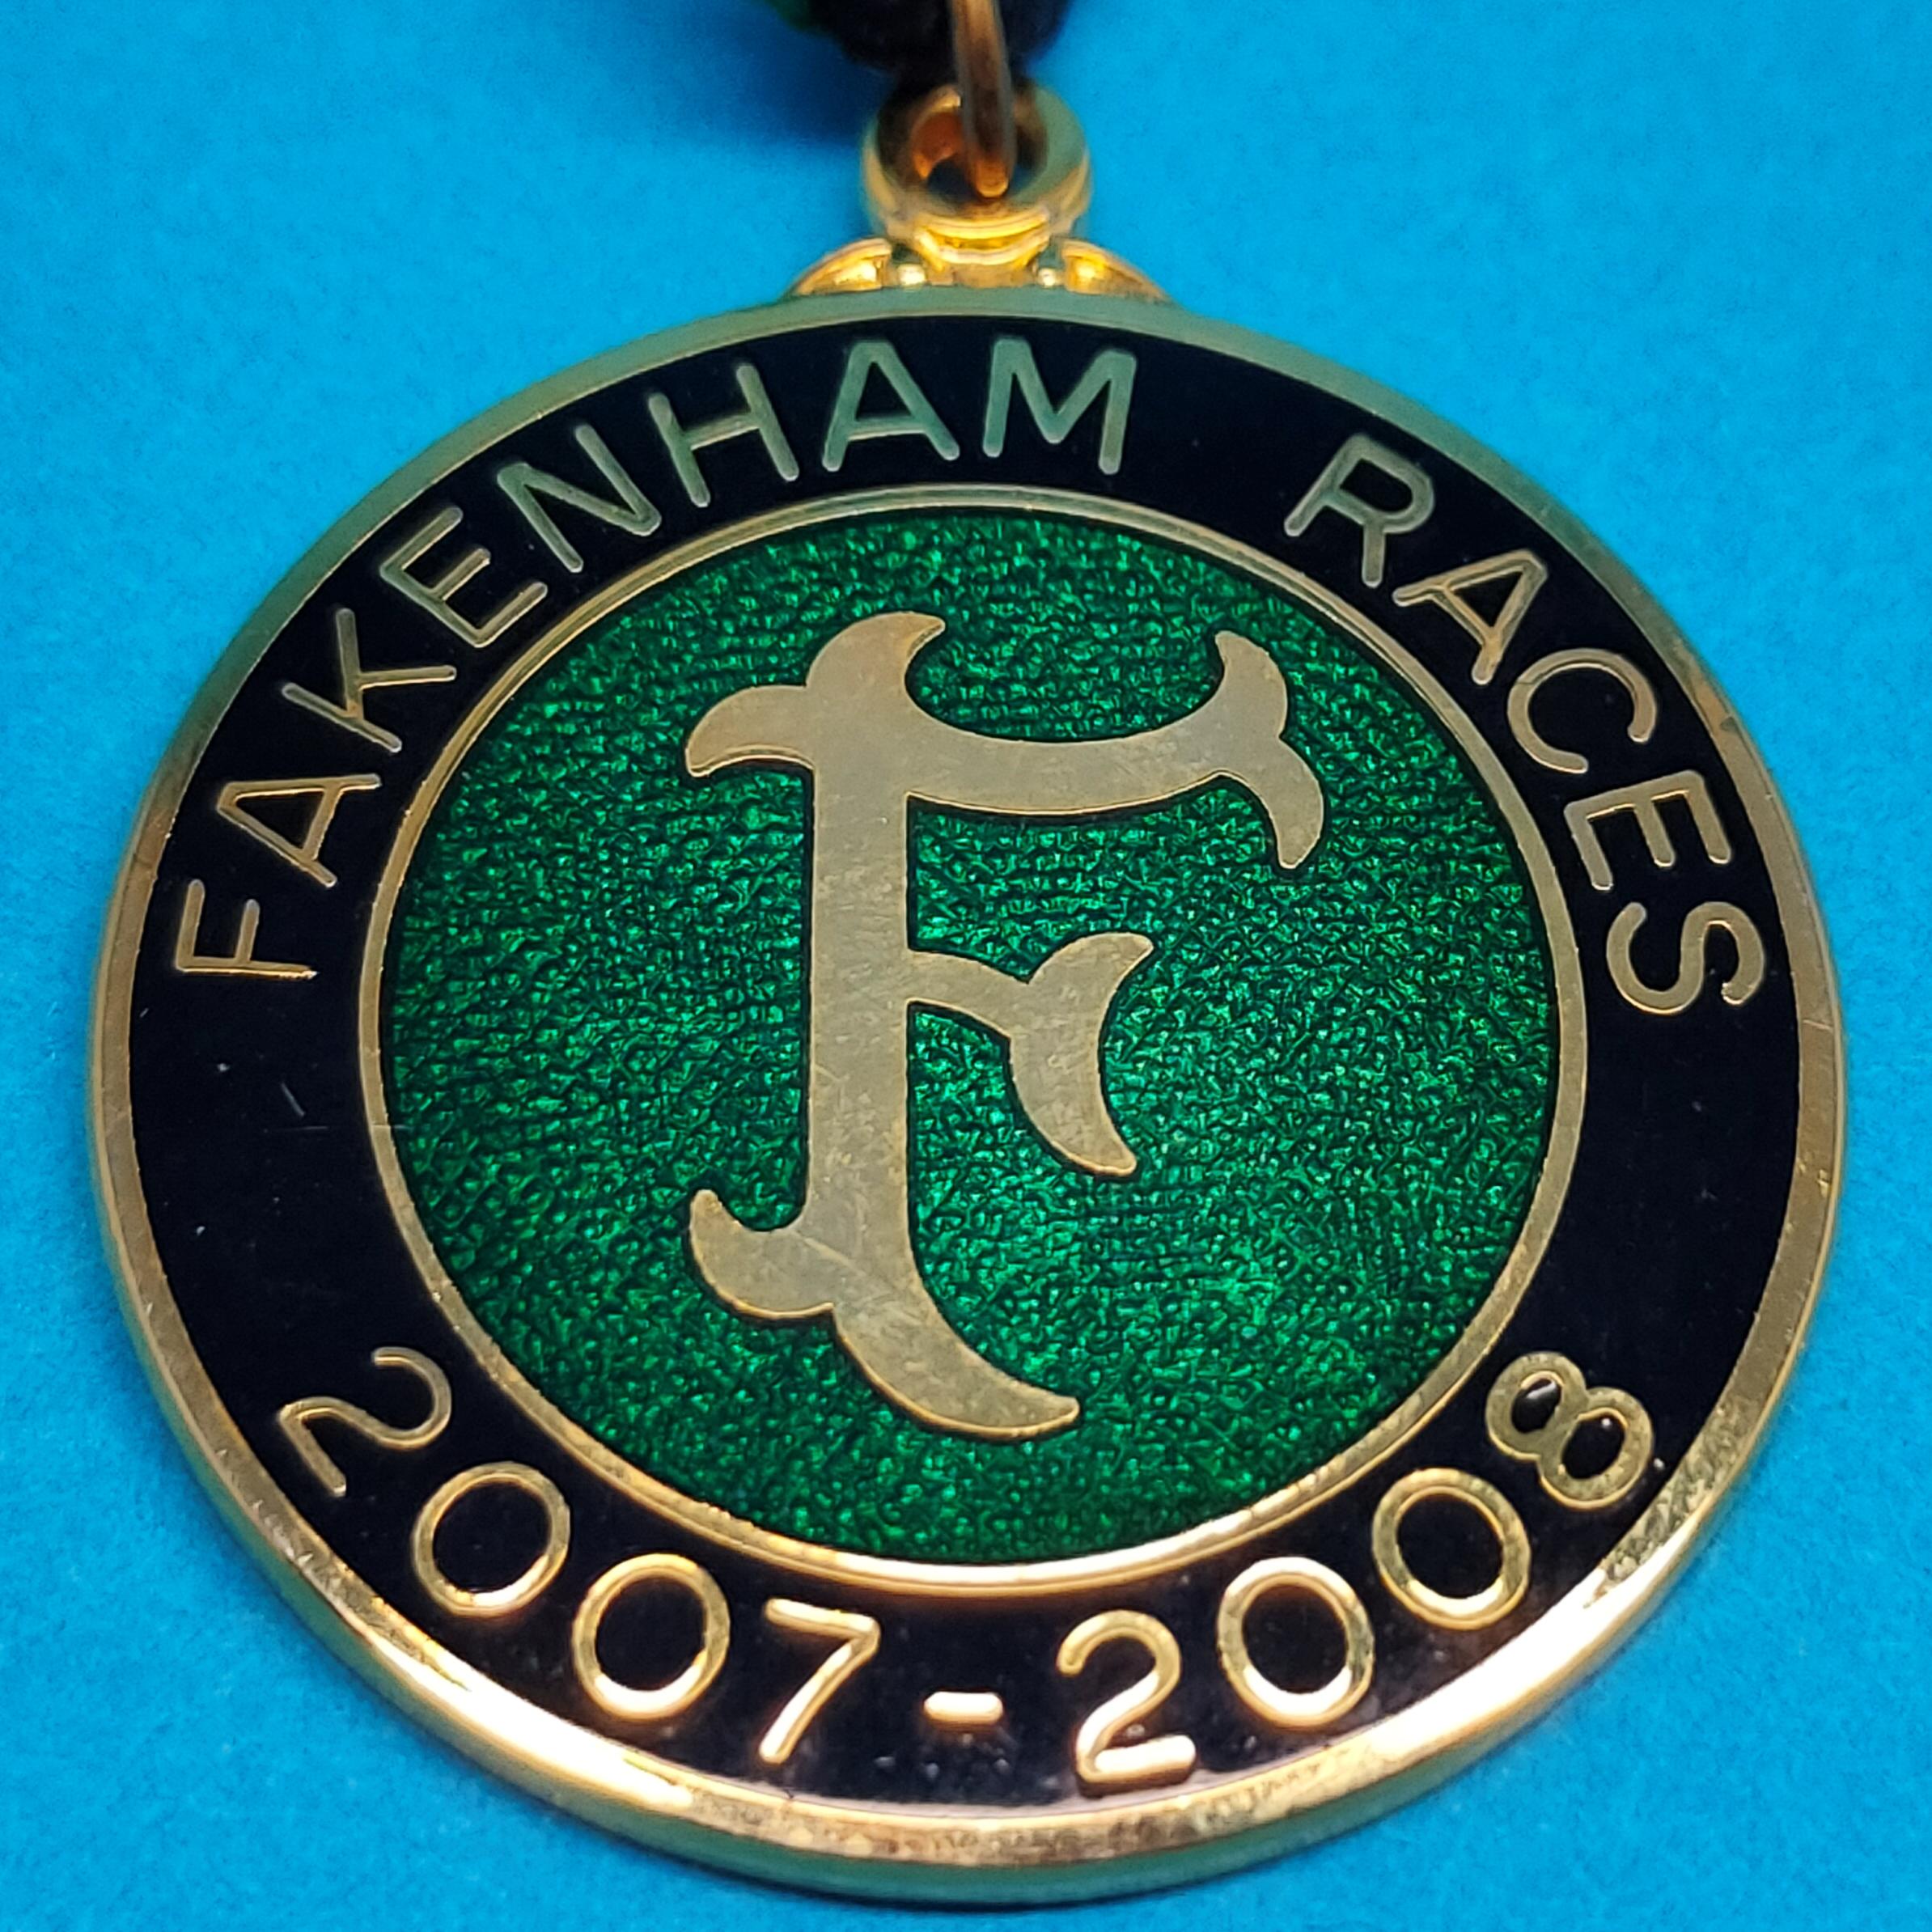 Fakenham 2007 / 2008